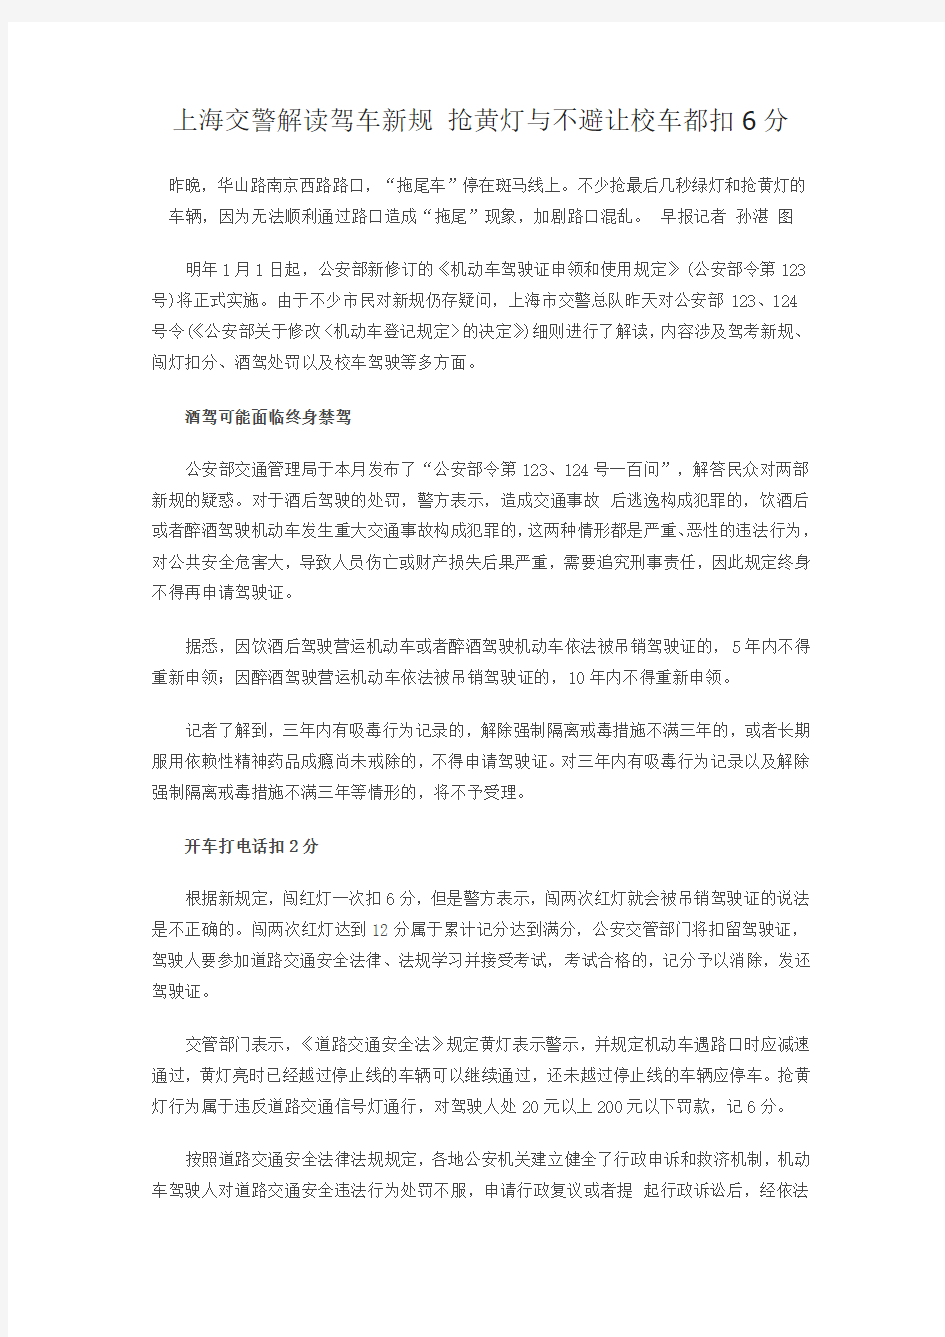 上海交警解读驾车新规抢黄灯与不避让校车都扣6分